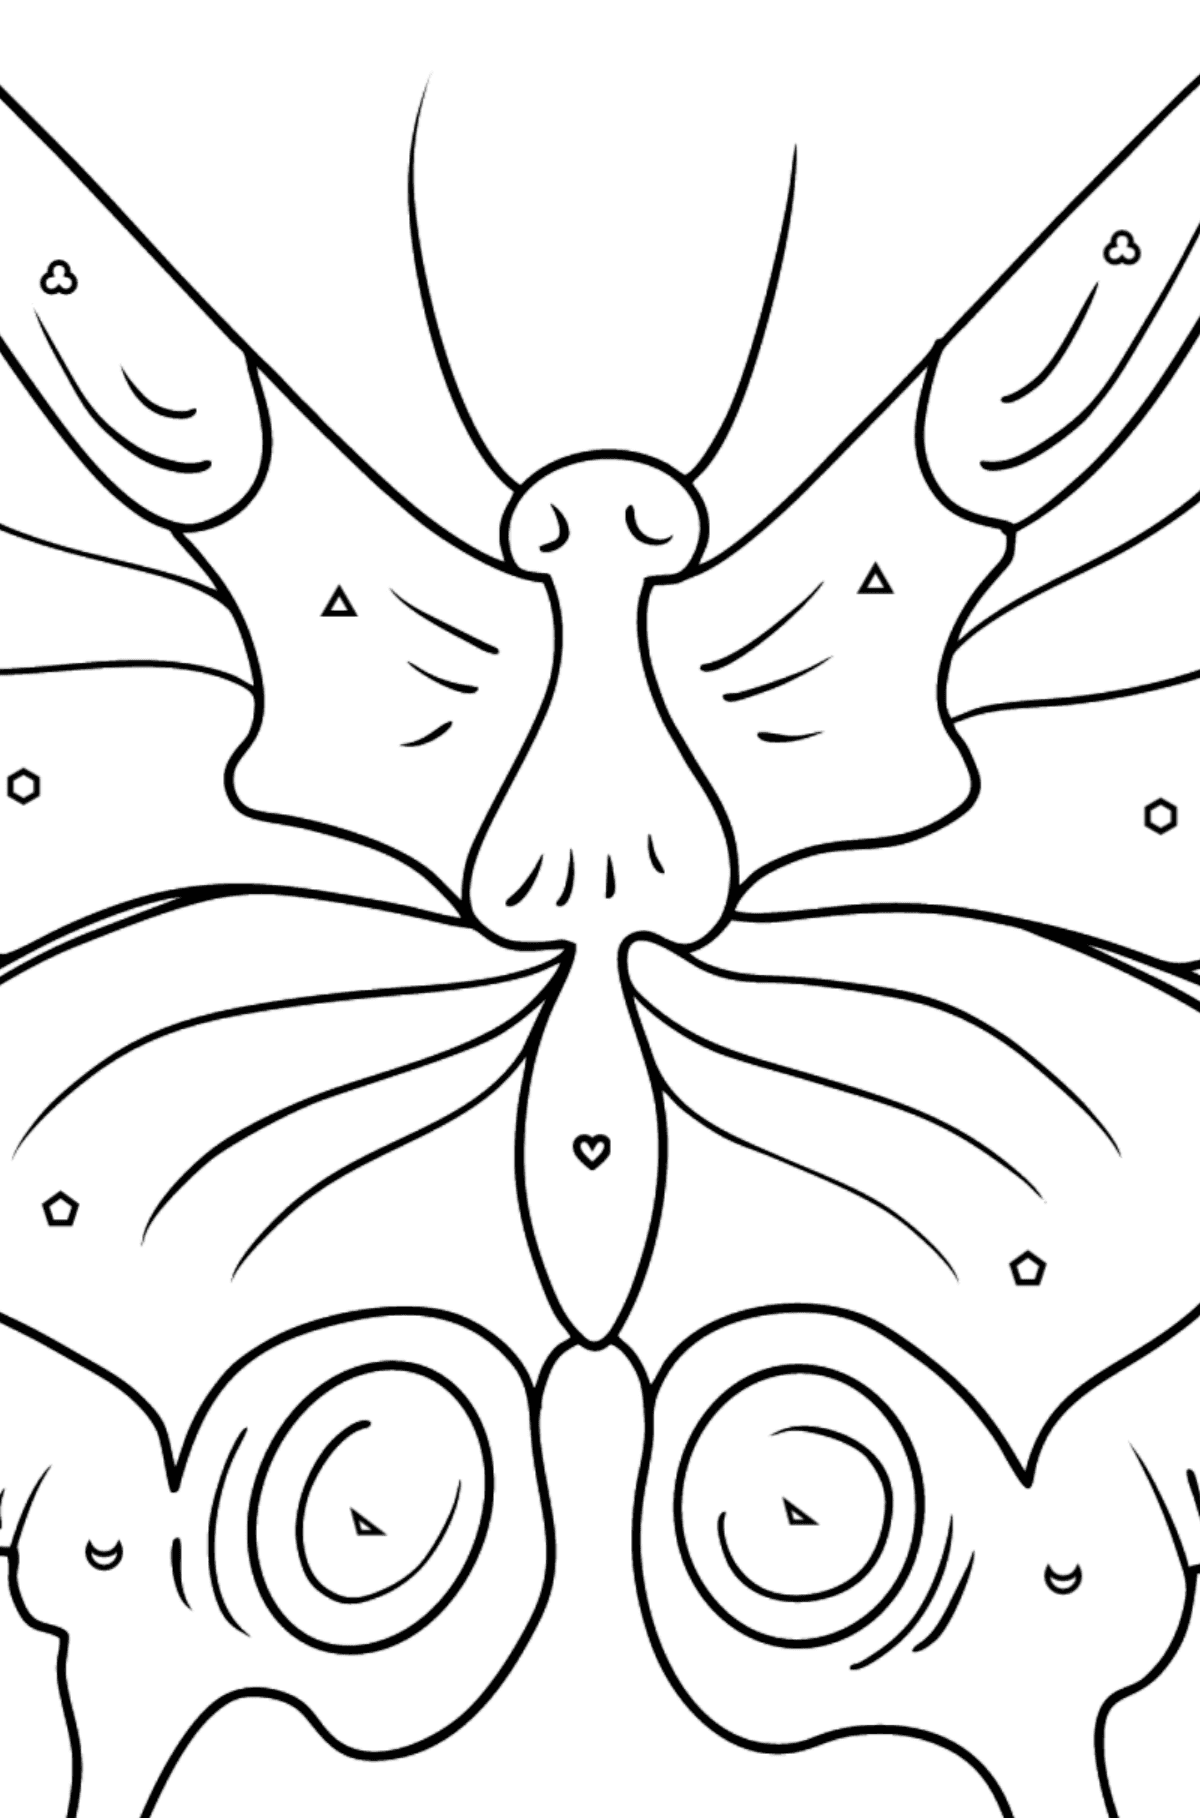 Omalovánka motýl otakárek - Omalovánka podle Geometrických tvarů pro děti